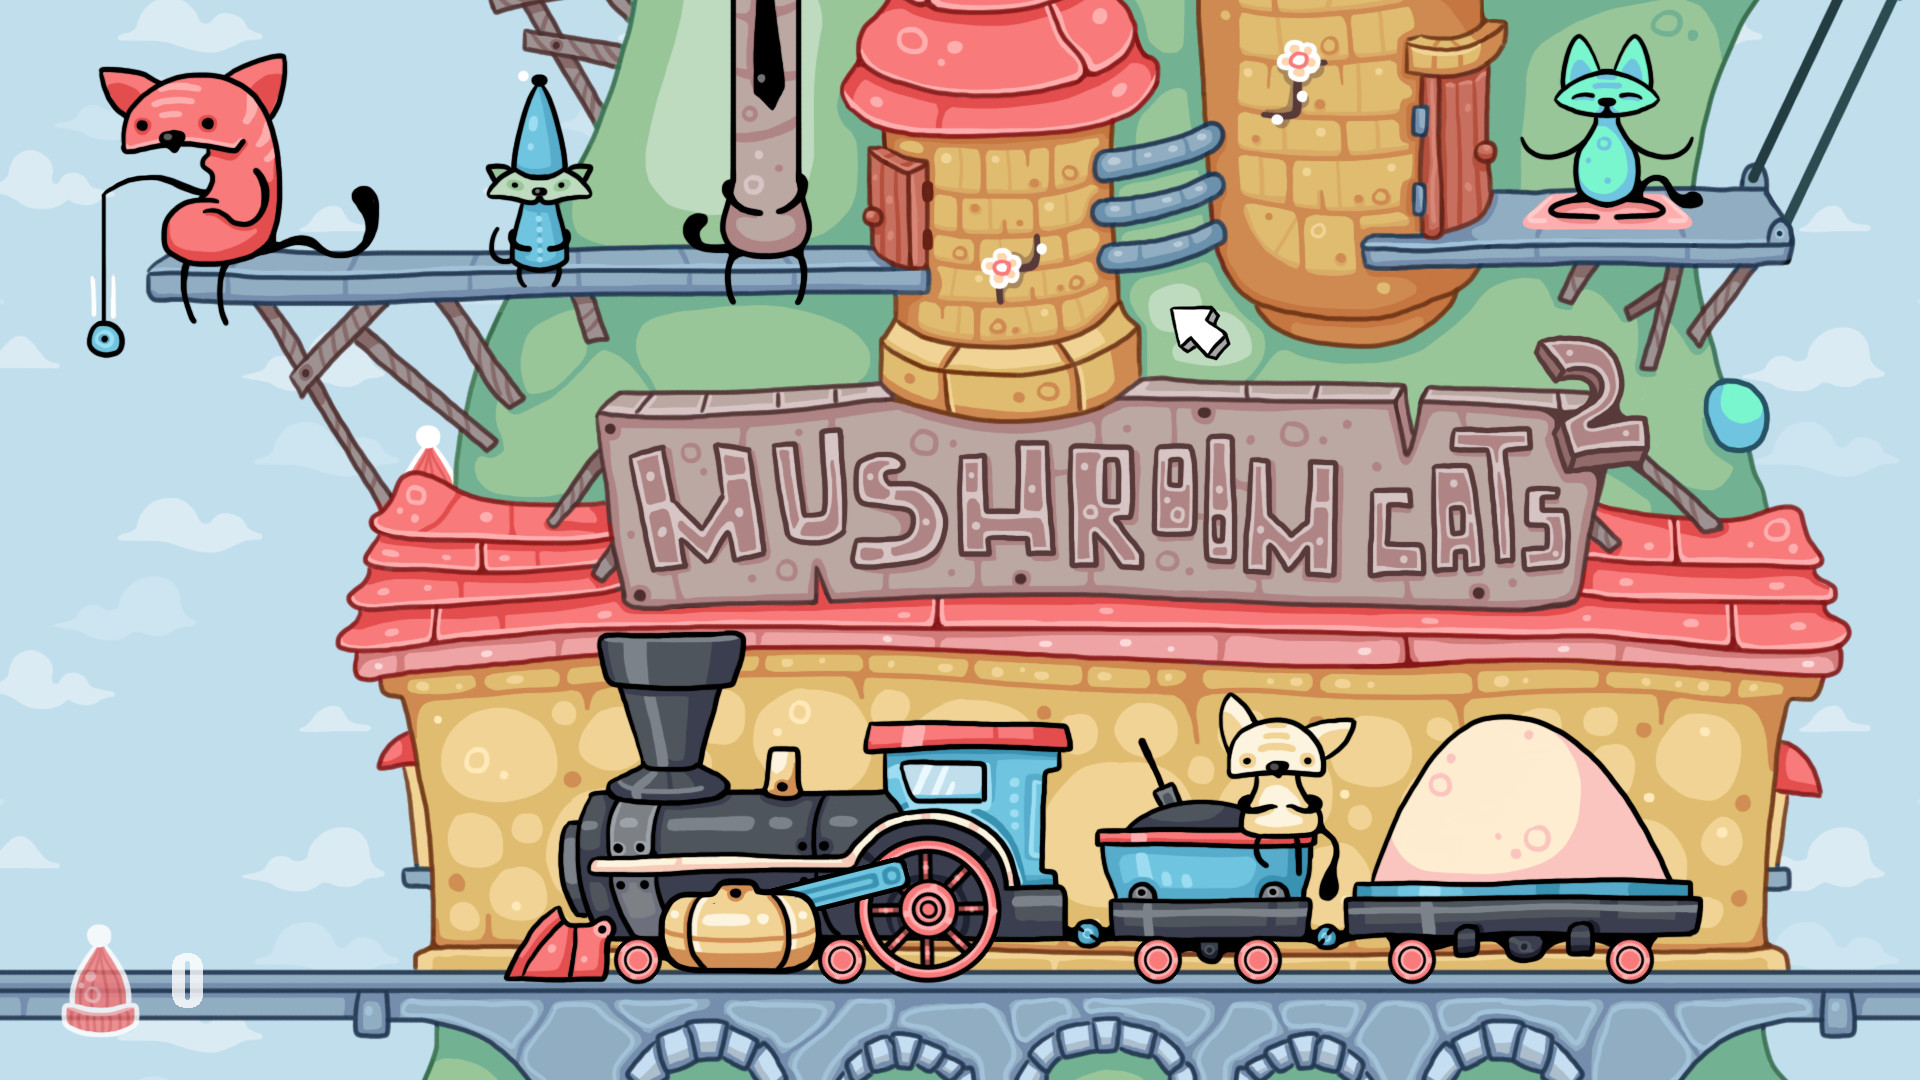 Mushroom Cats 2 screenshot